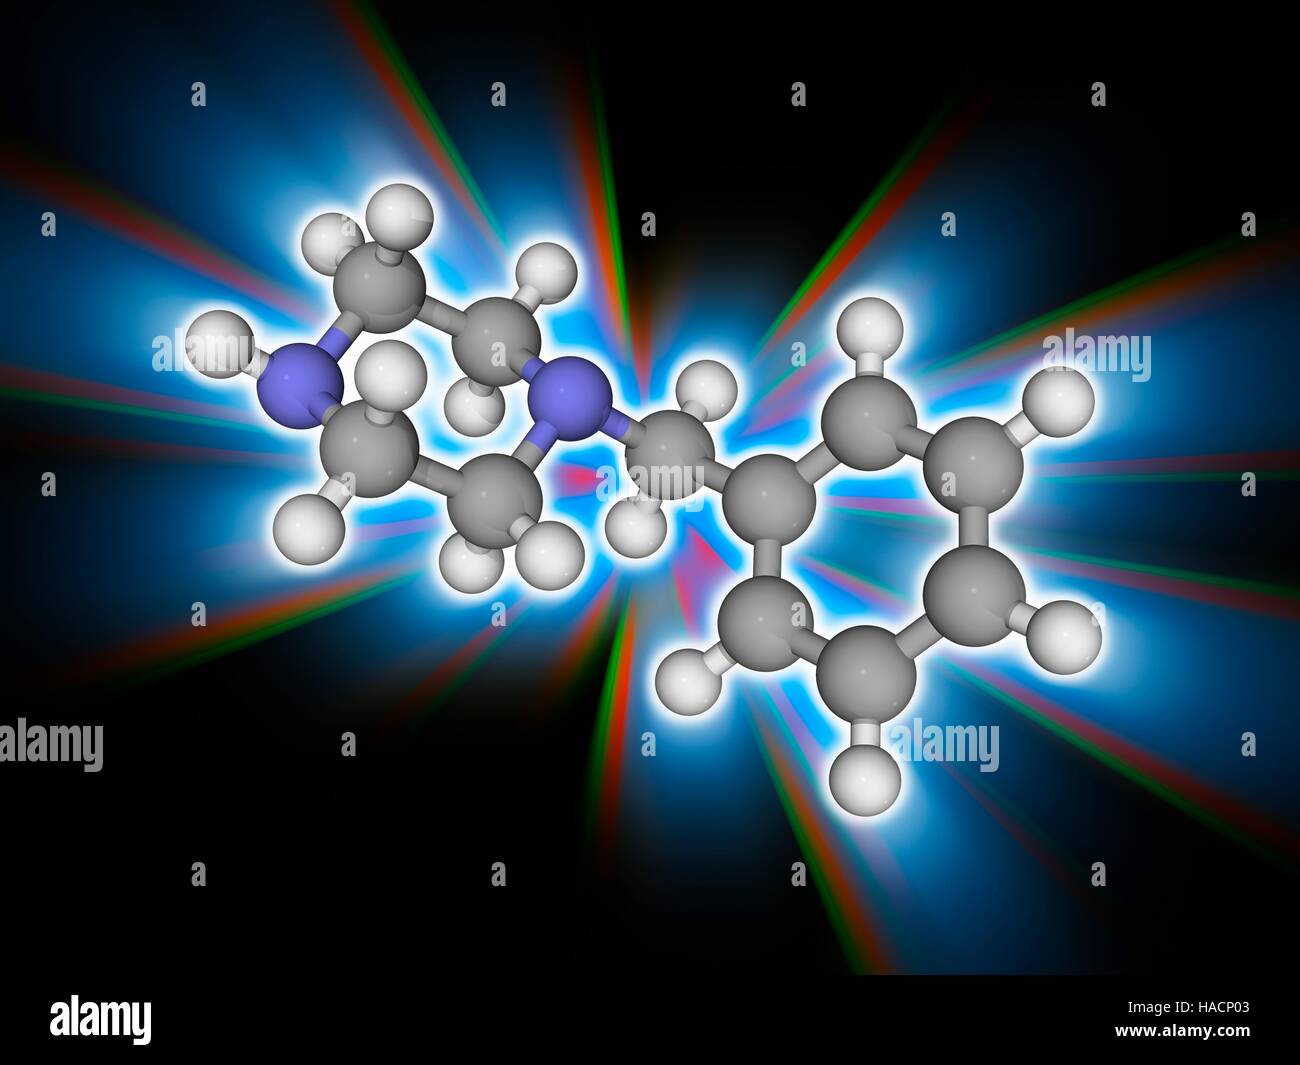 Benzylpiperazin. Molekulares Modell des Drogen-Benzylpiperazin (BZP, C11. H16. (N2). Dieses Medikament hat euphorische und stimulierende Eigenschaften. Es ist in einigen Ländern verboten. Atome als Kugeln dargestellt werden und sind farblich gekennzeichnet: Kohlenstoff (grau), Wasserstoff (weiß) und Stickstoff (blau). Abbildung. Stockfoto